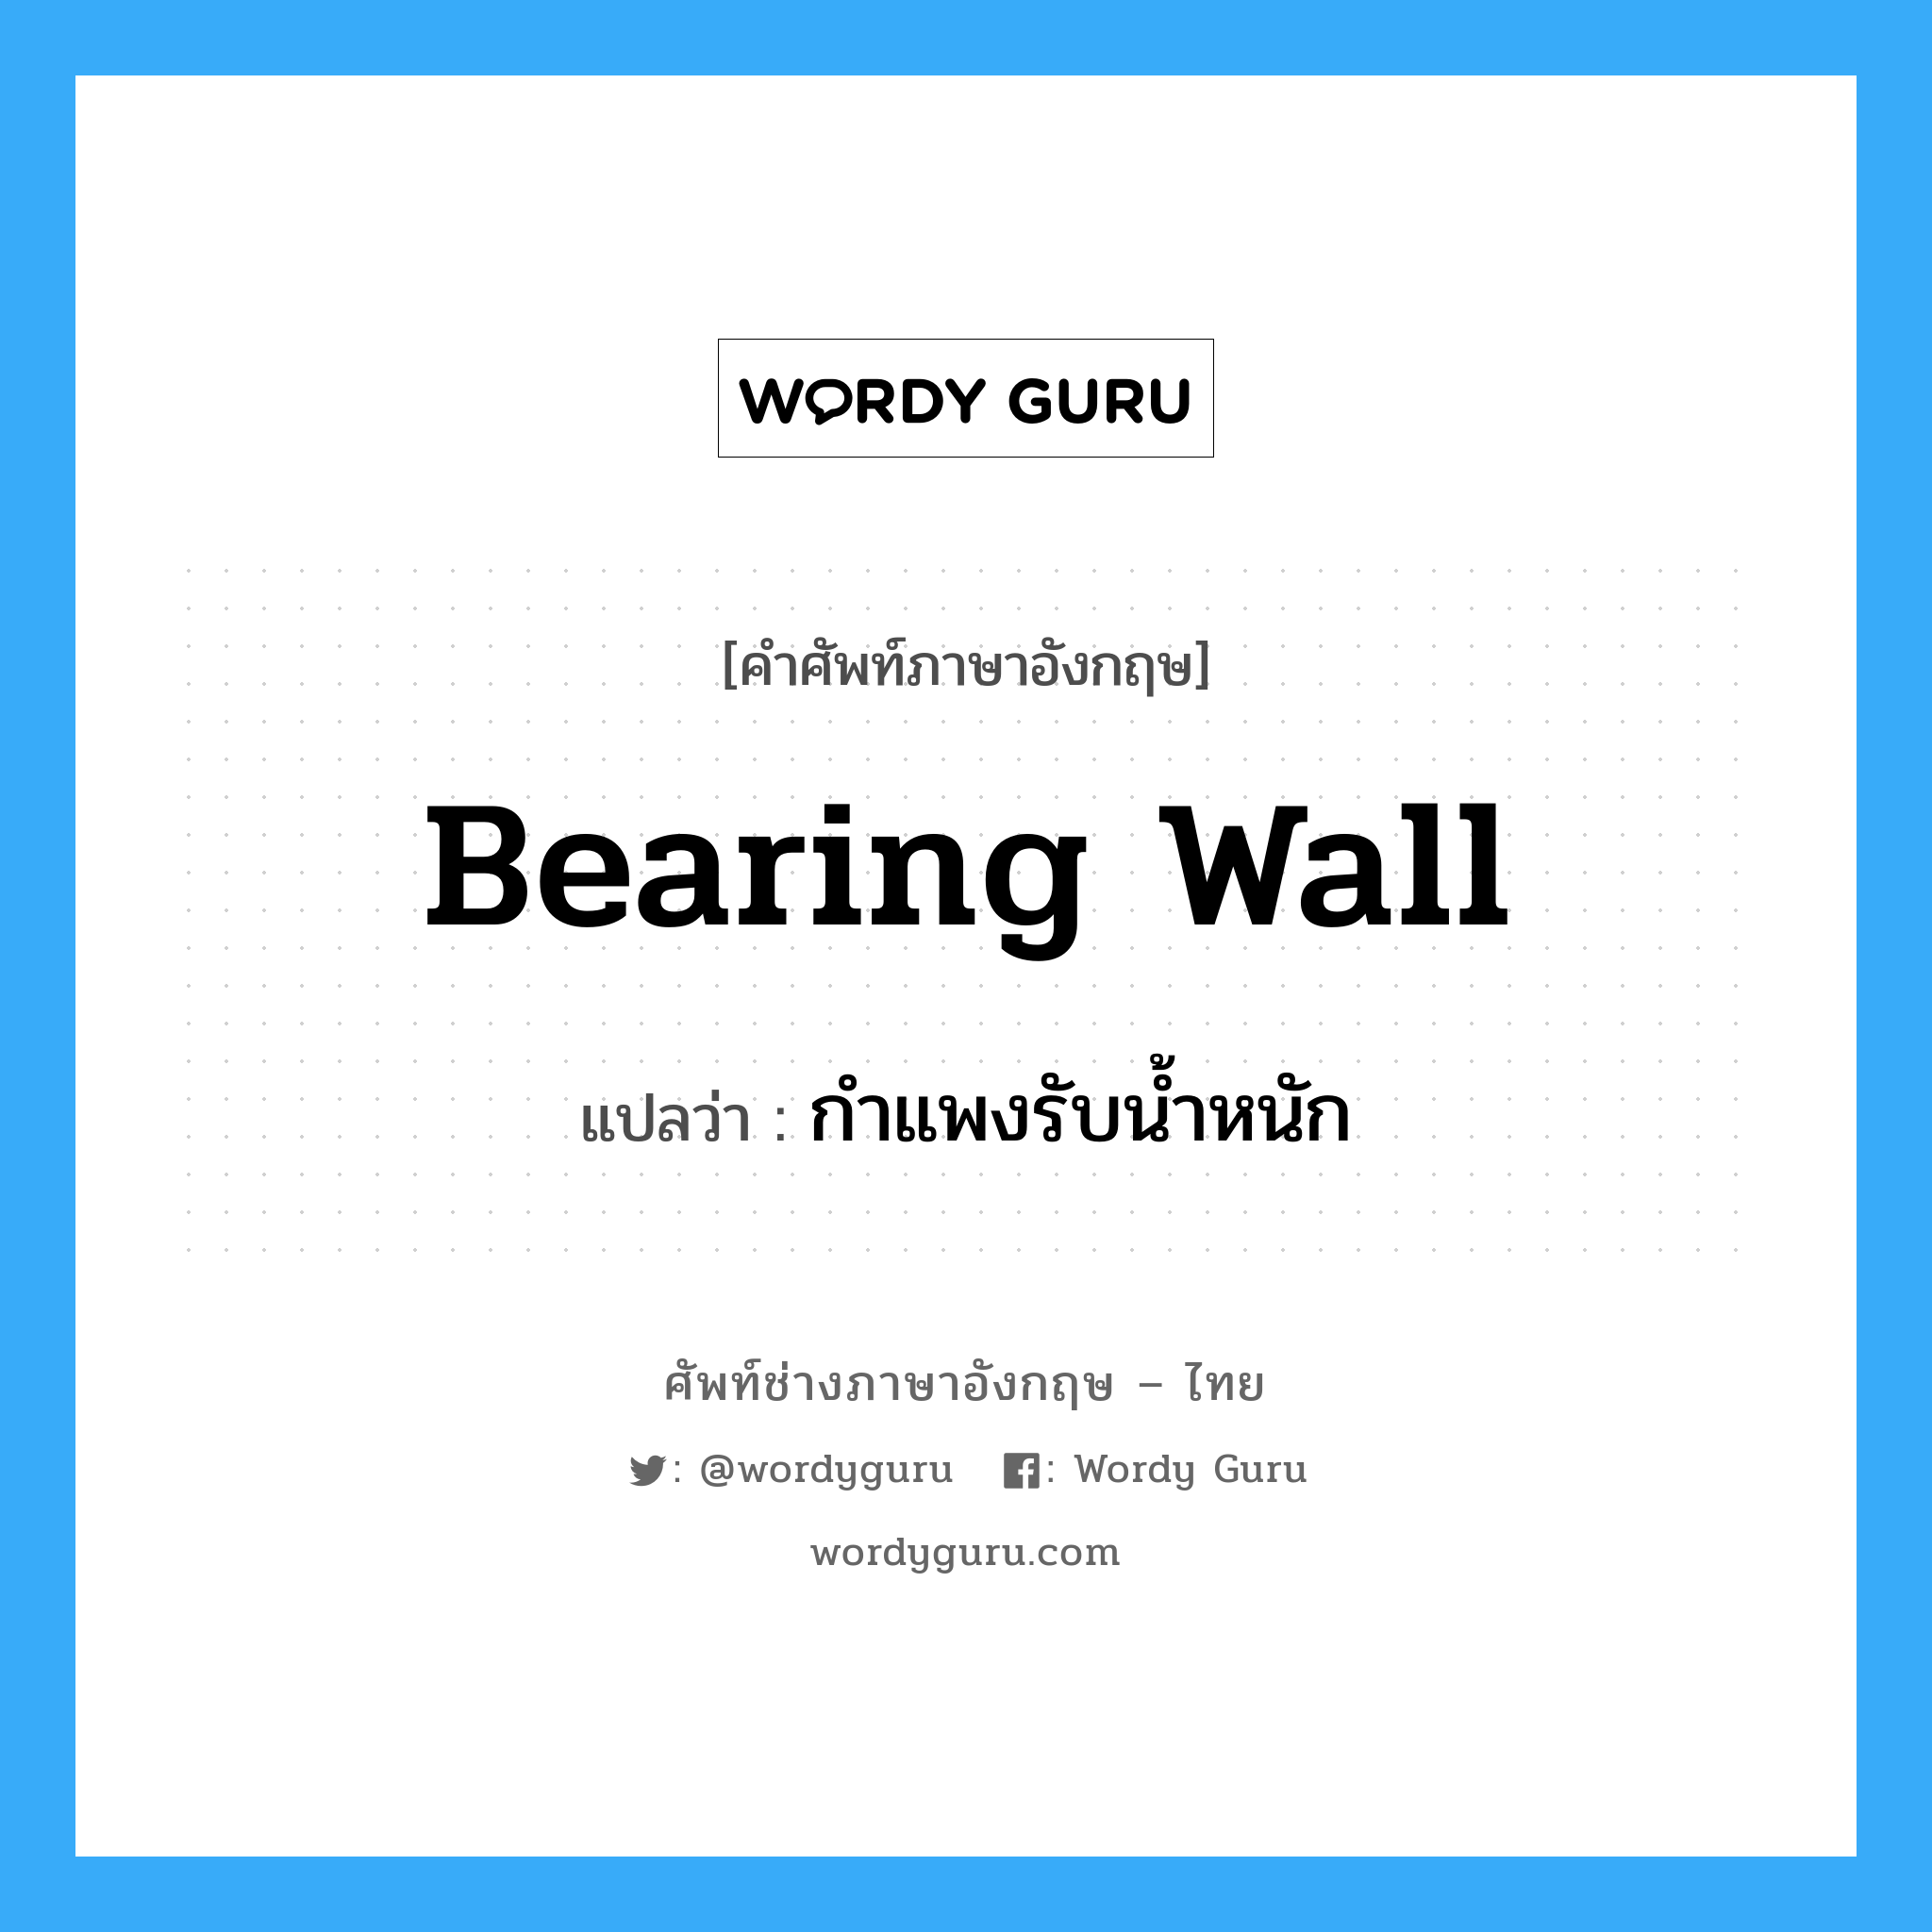 กำแพงรับน้ำหนัก ภาษาอังกฤษ?, คำศัพท์ช่างภาษาอังกฤษ - ไทย กำแพงรับน้ำหนัก คำศัพท์ภาษาอังกฤษ กำแพงรับน้ำหนัก แปลว่า bearing wall